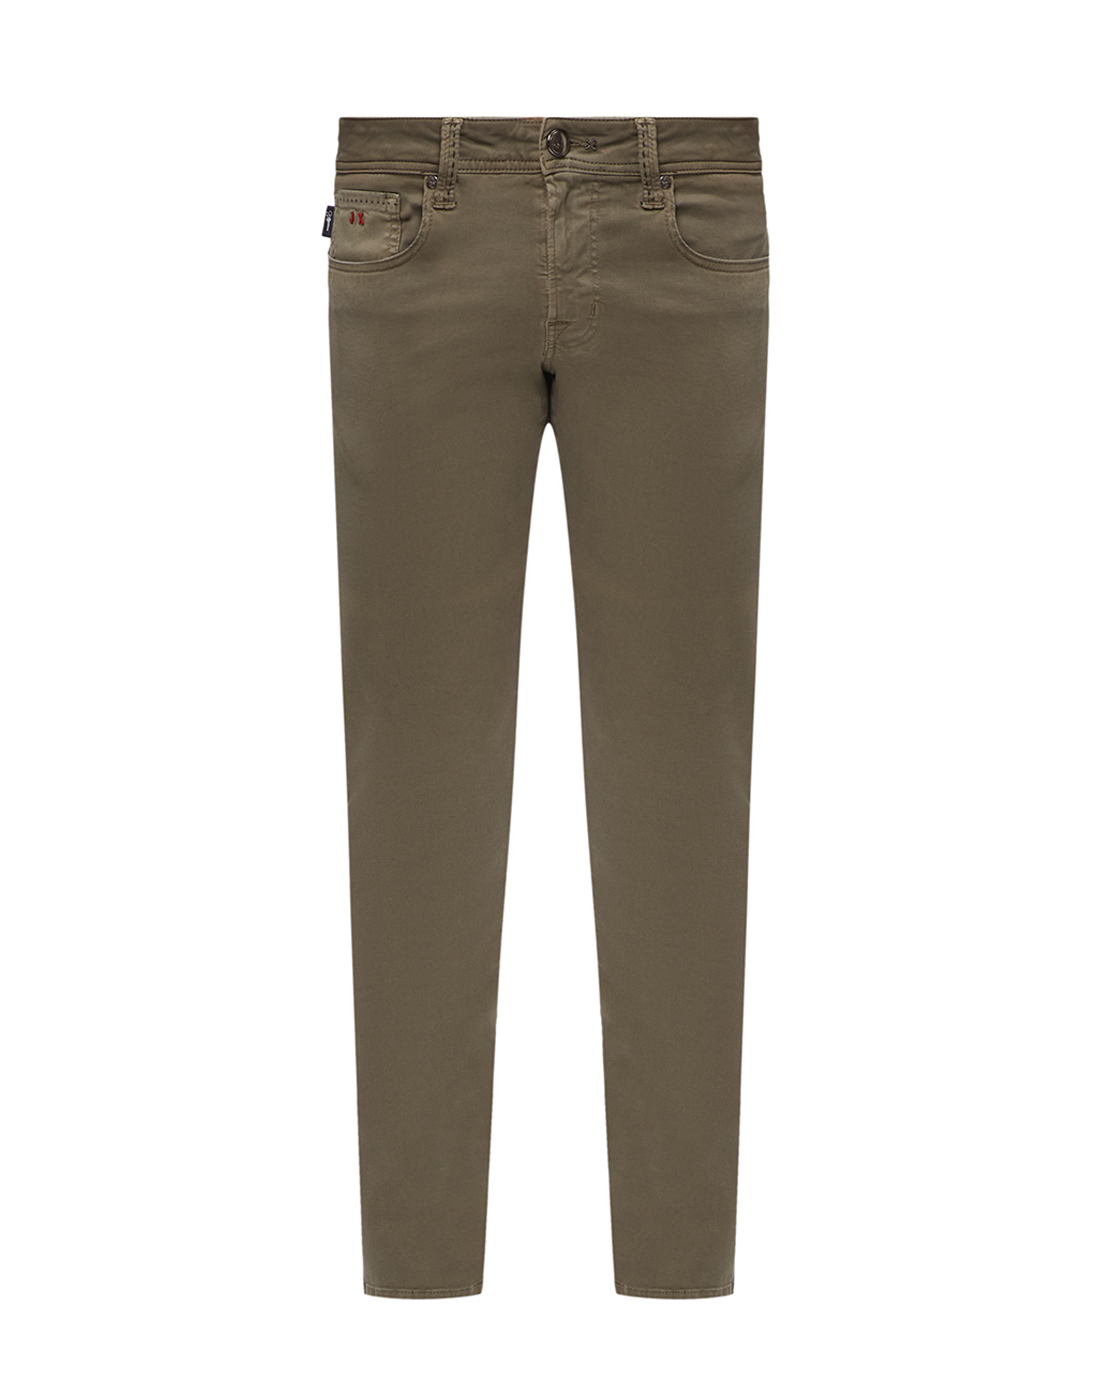 Мужские коричневые джинсы Tramarossa SG154_0295-1